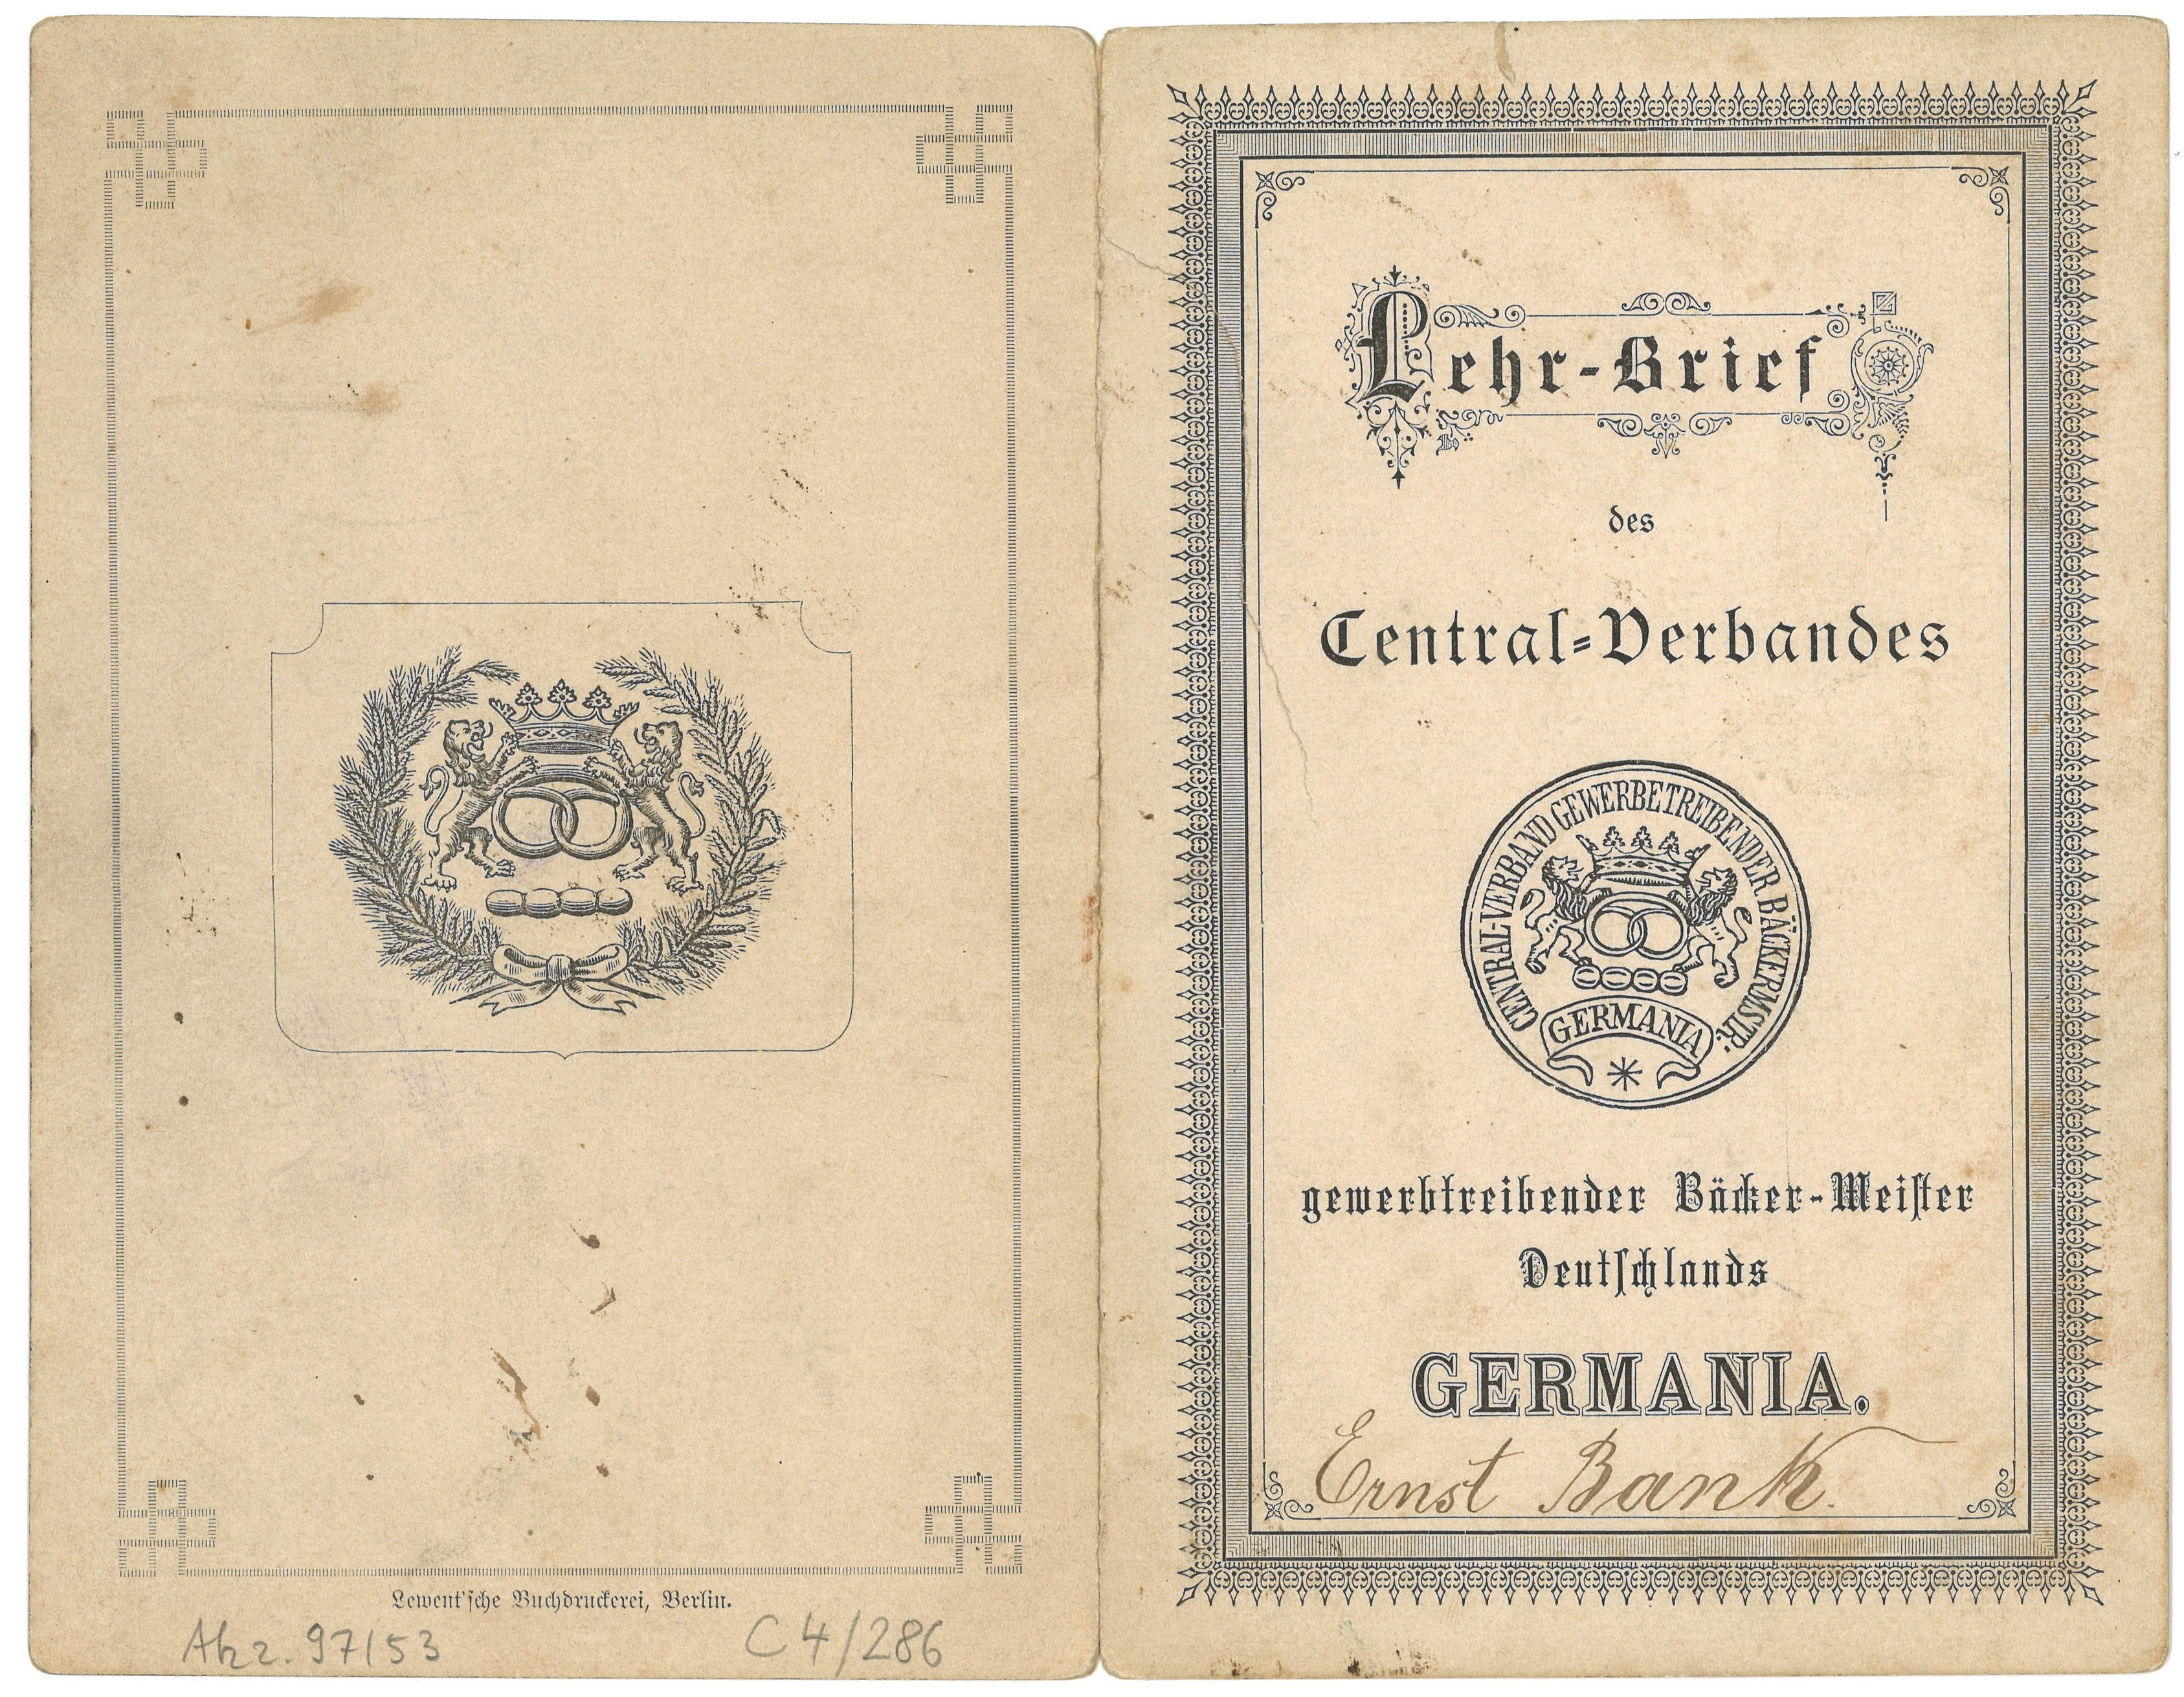 Prüfungzeugnis und Lehrbrief für den Bäcker Ernst Bank in Potsdam (1883) (Landesgeschichtliche Vereinigung für die Mark Brandenburg e.V., Archiv CC BY)